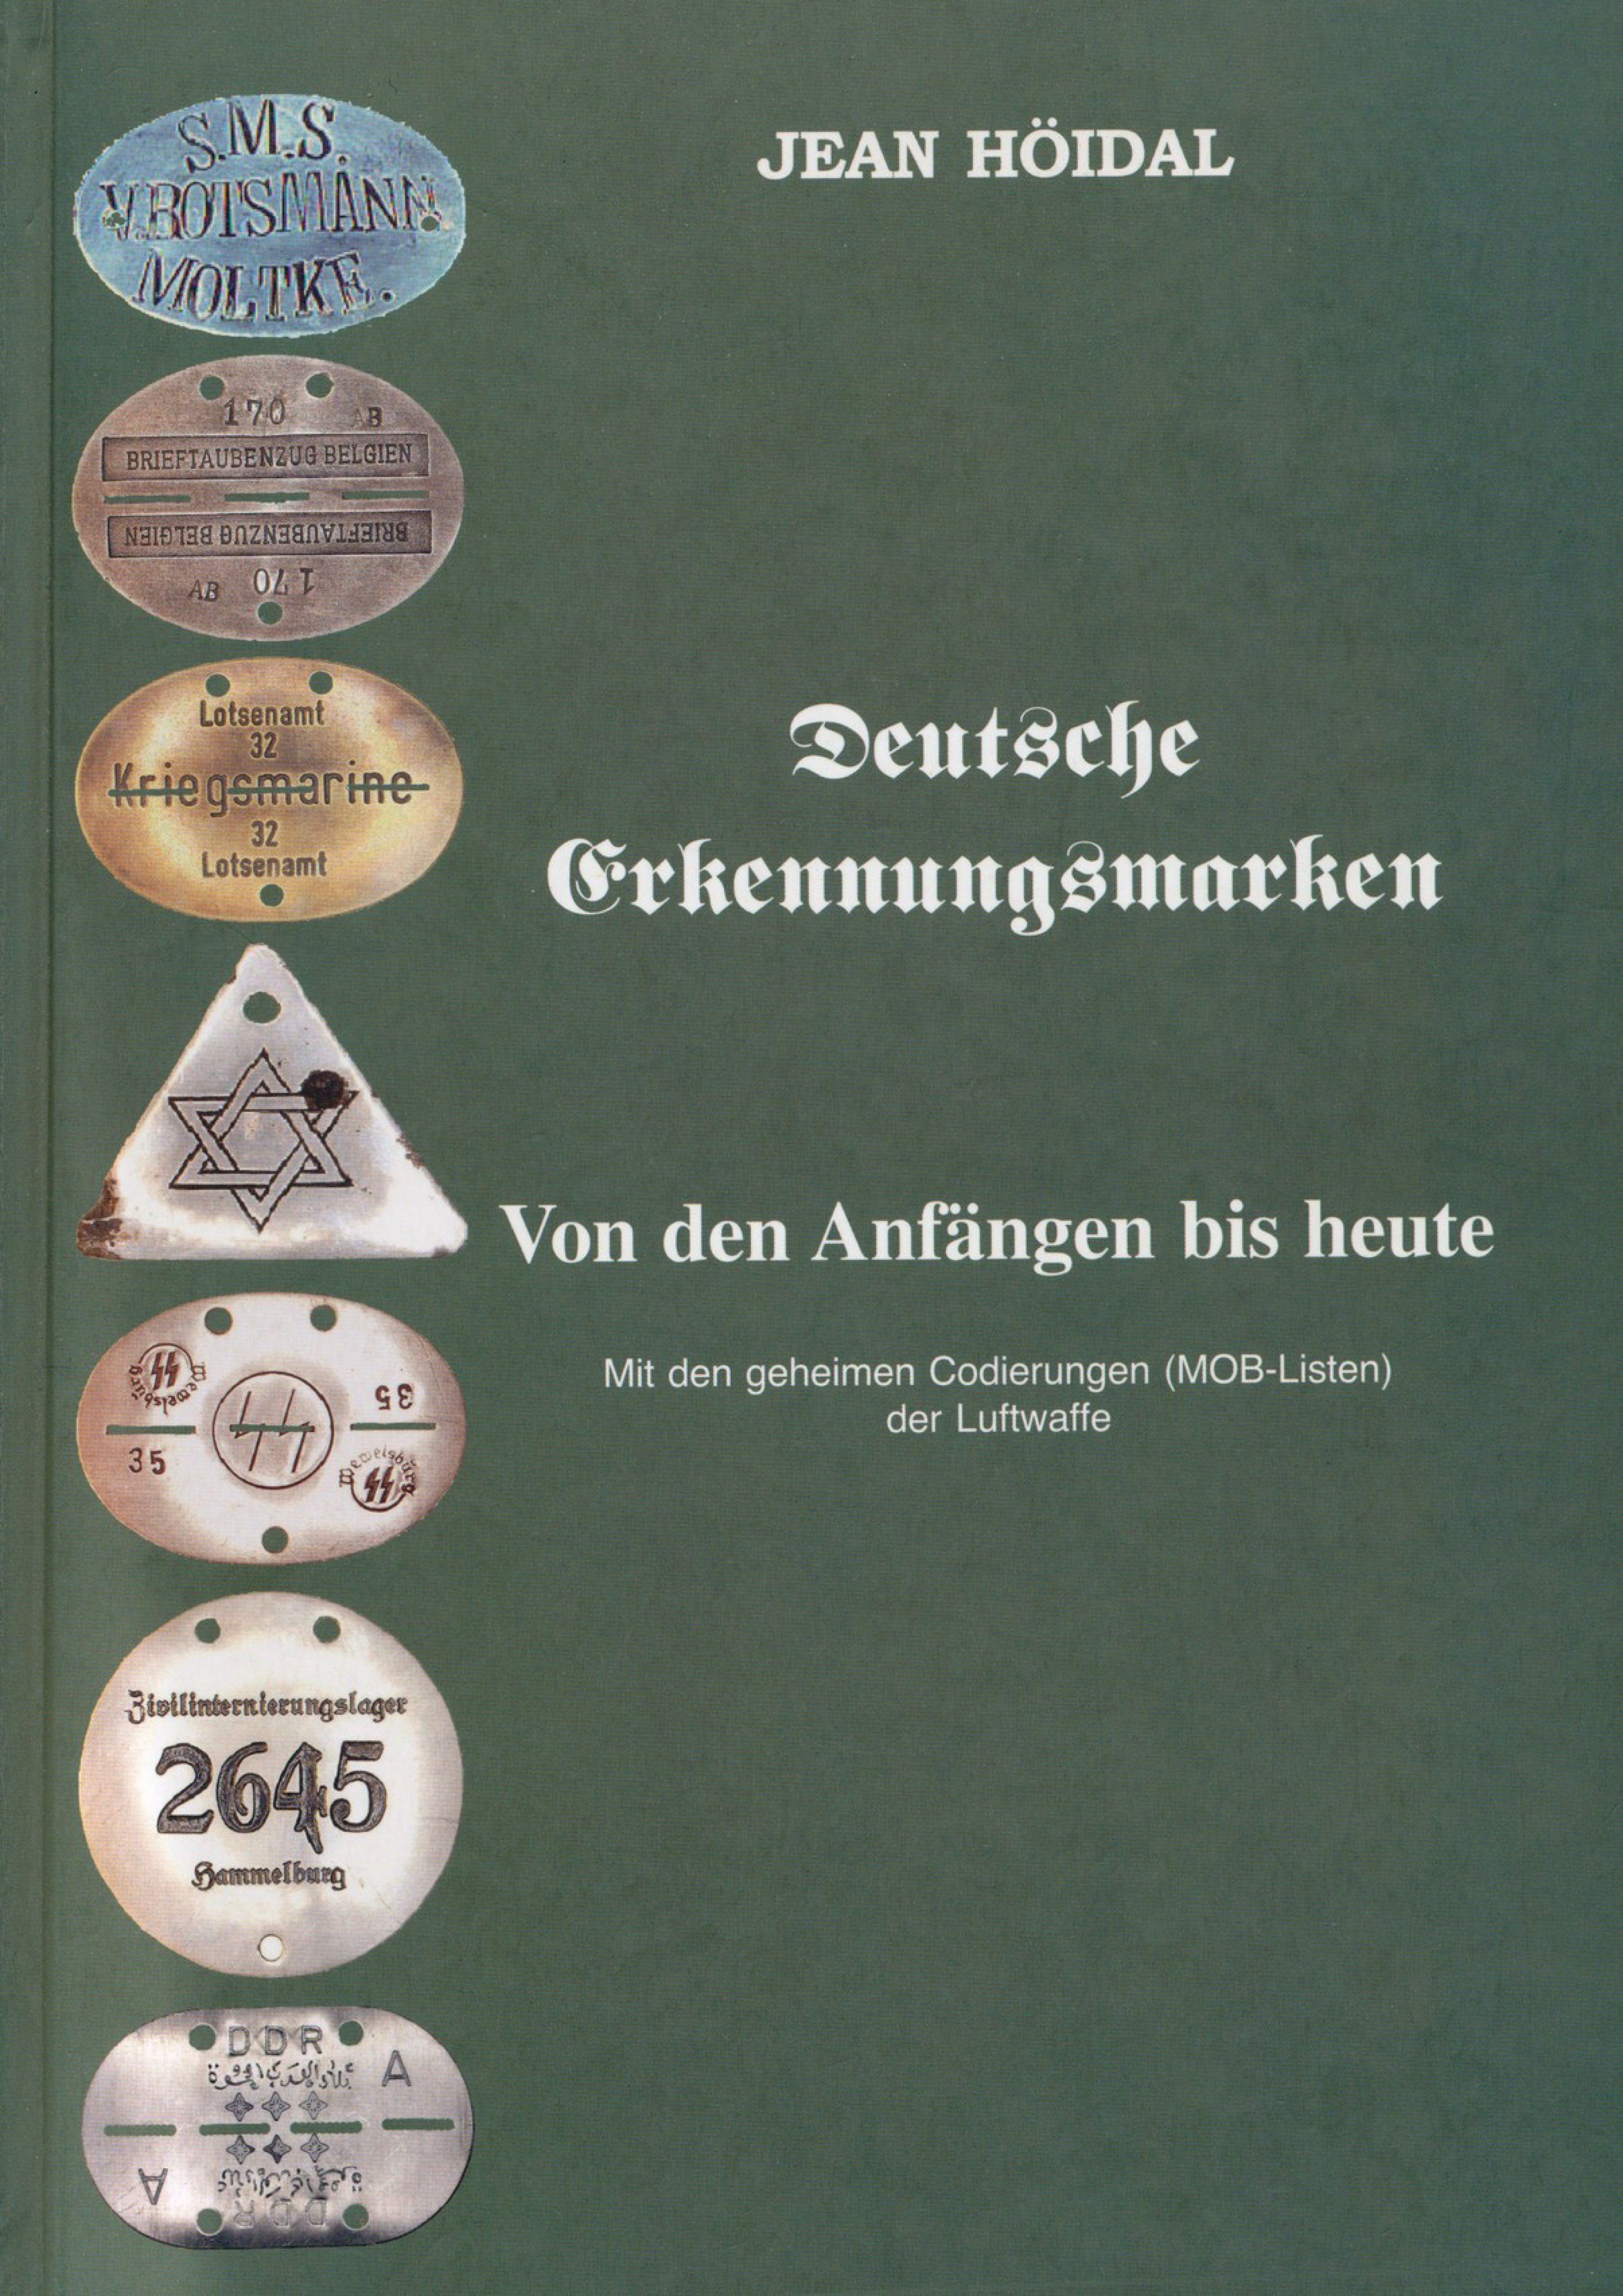 СПРАВОЧНИК. Германские смертельные медальоны. От начала и до сегодняшних дней